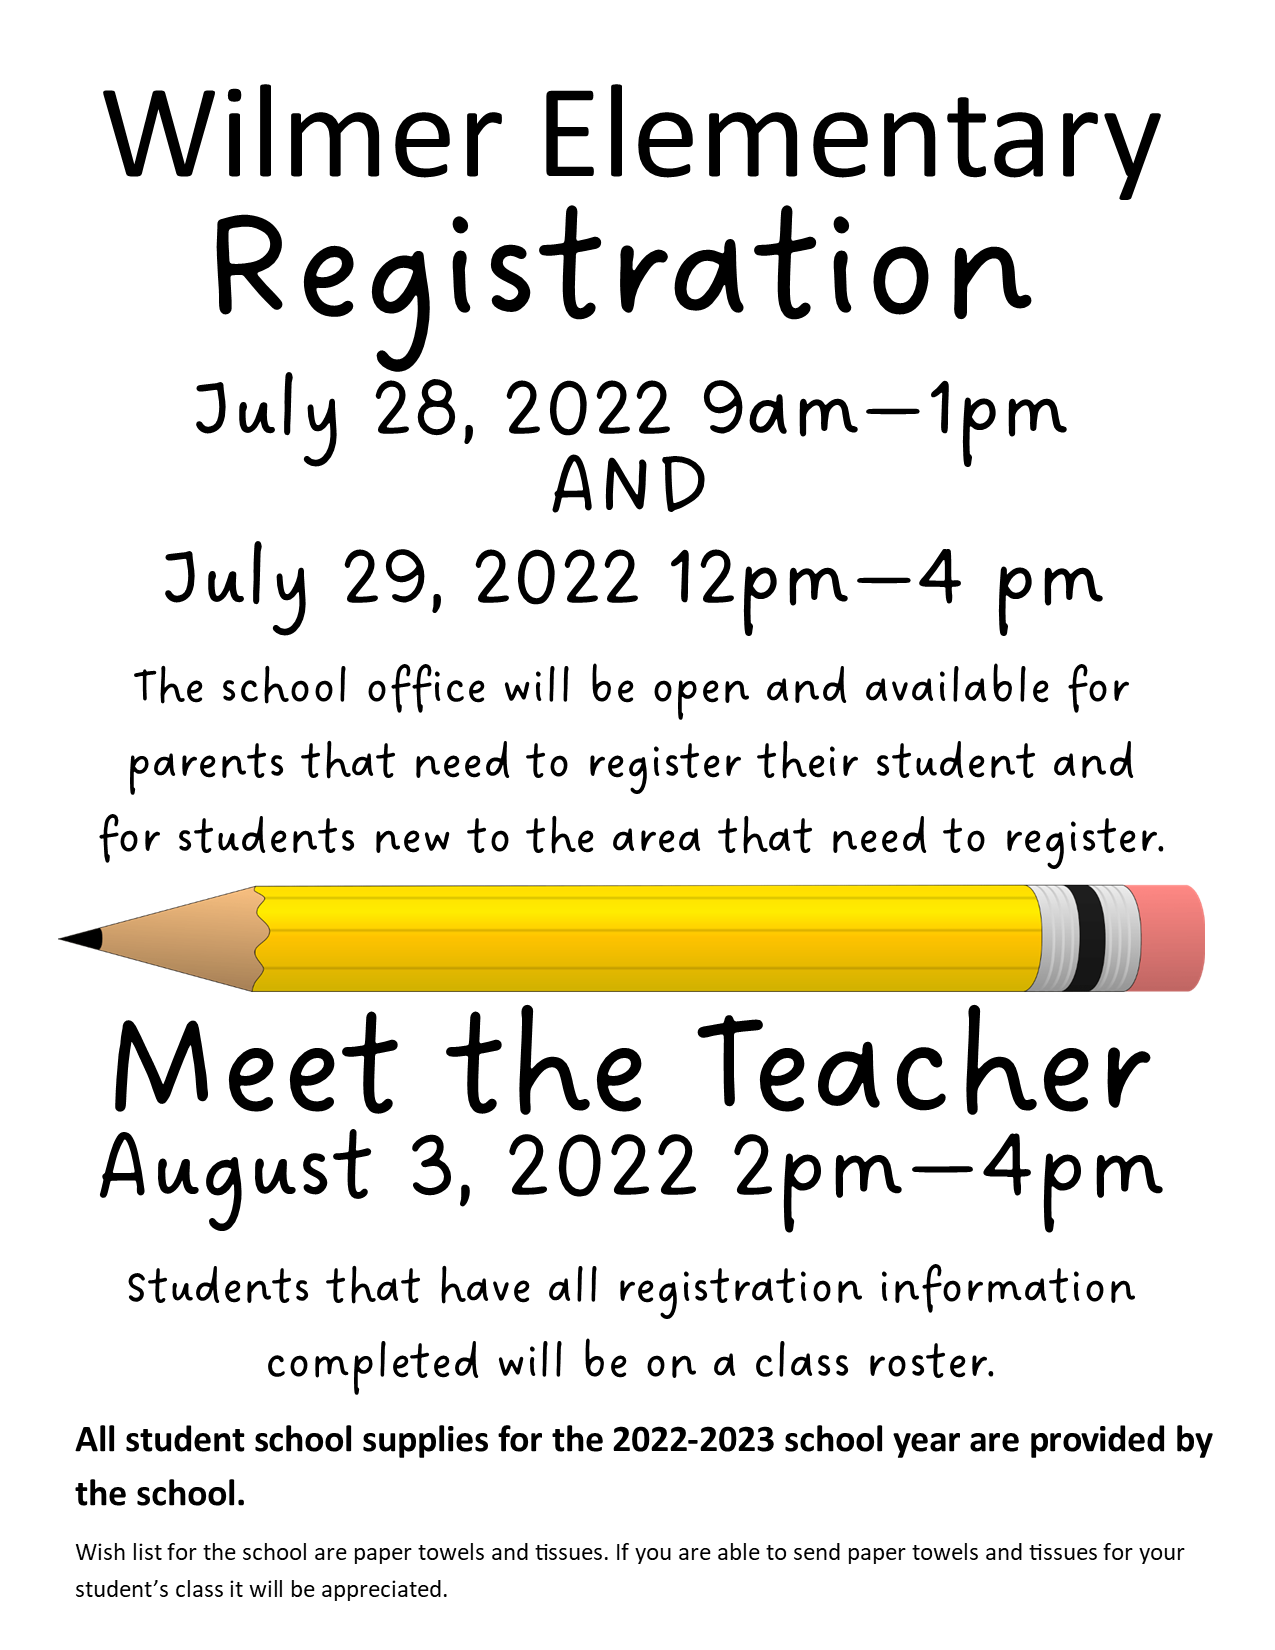 Meet the Teacher and Registration Flyer